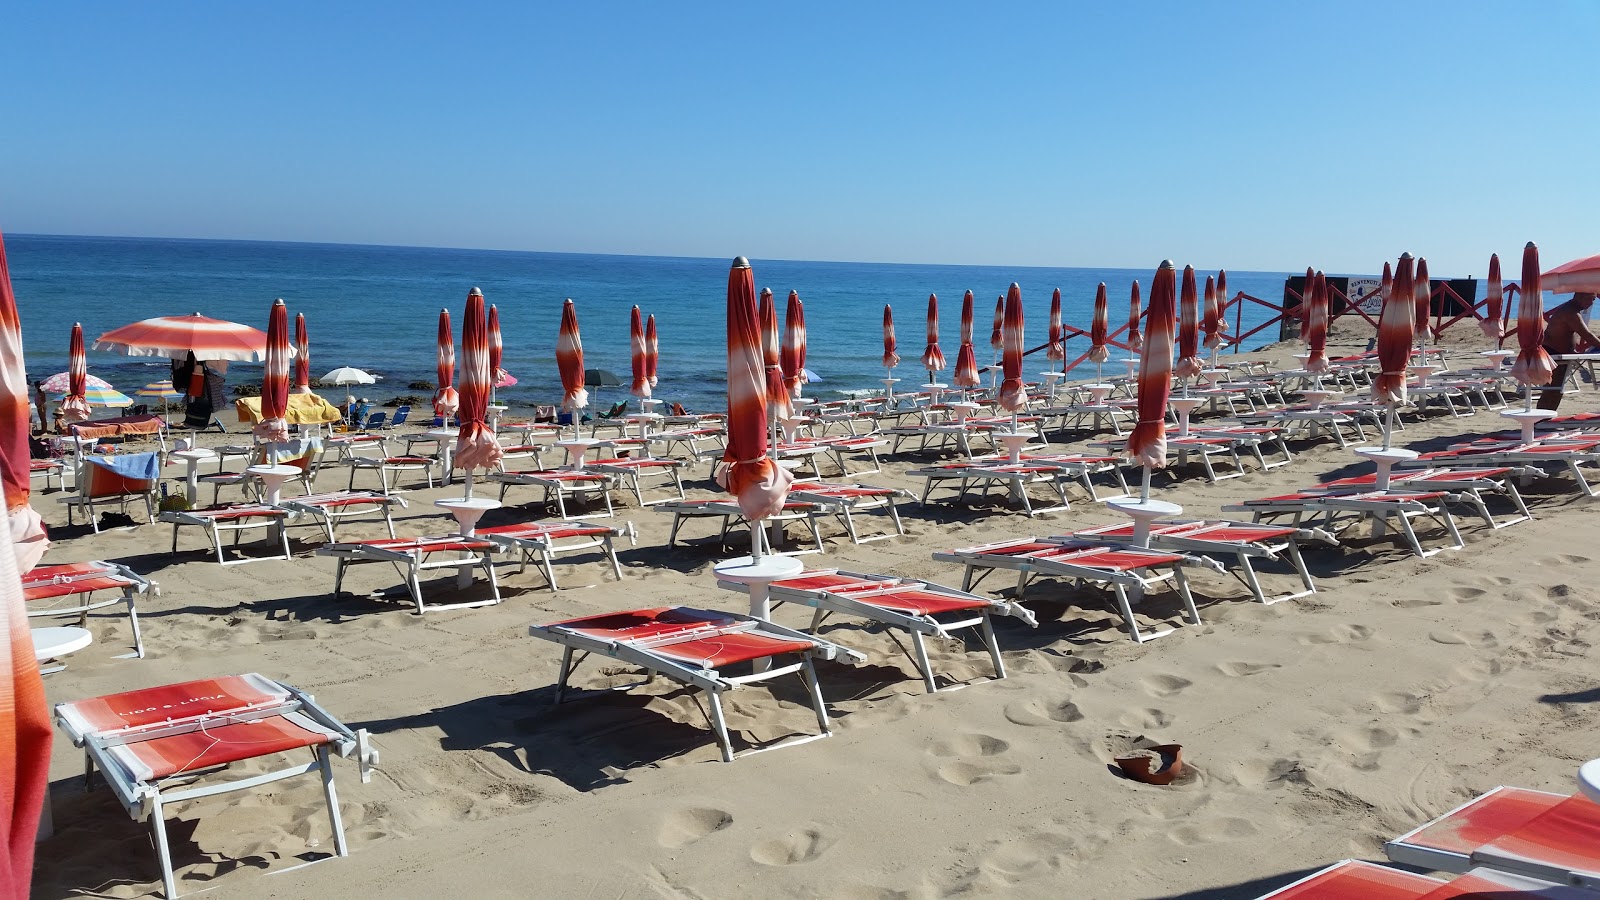 Foto de Spiaggia Via di Torre Resta ubicado en área natural